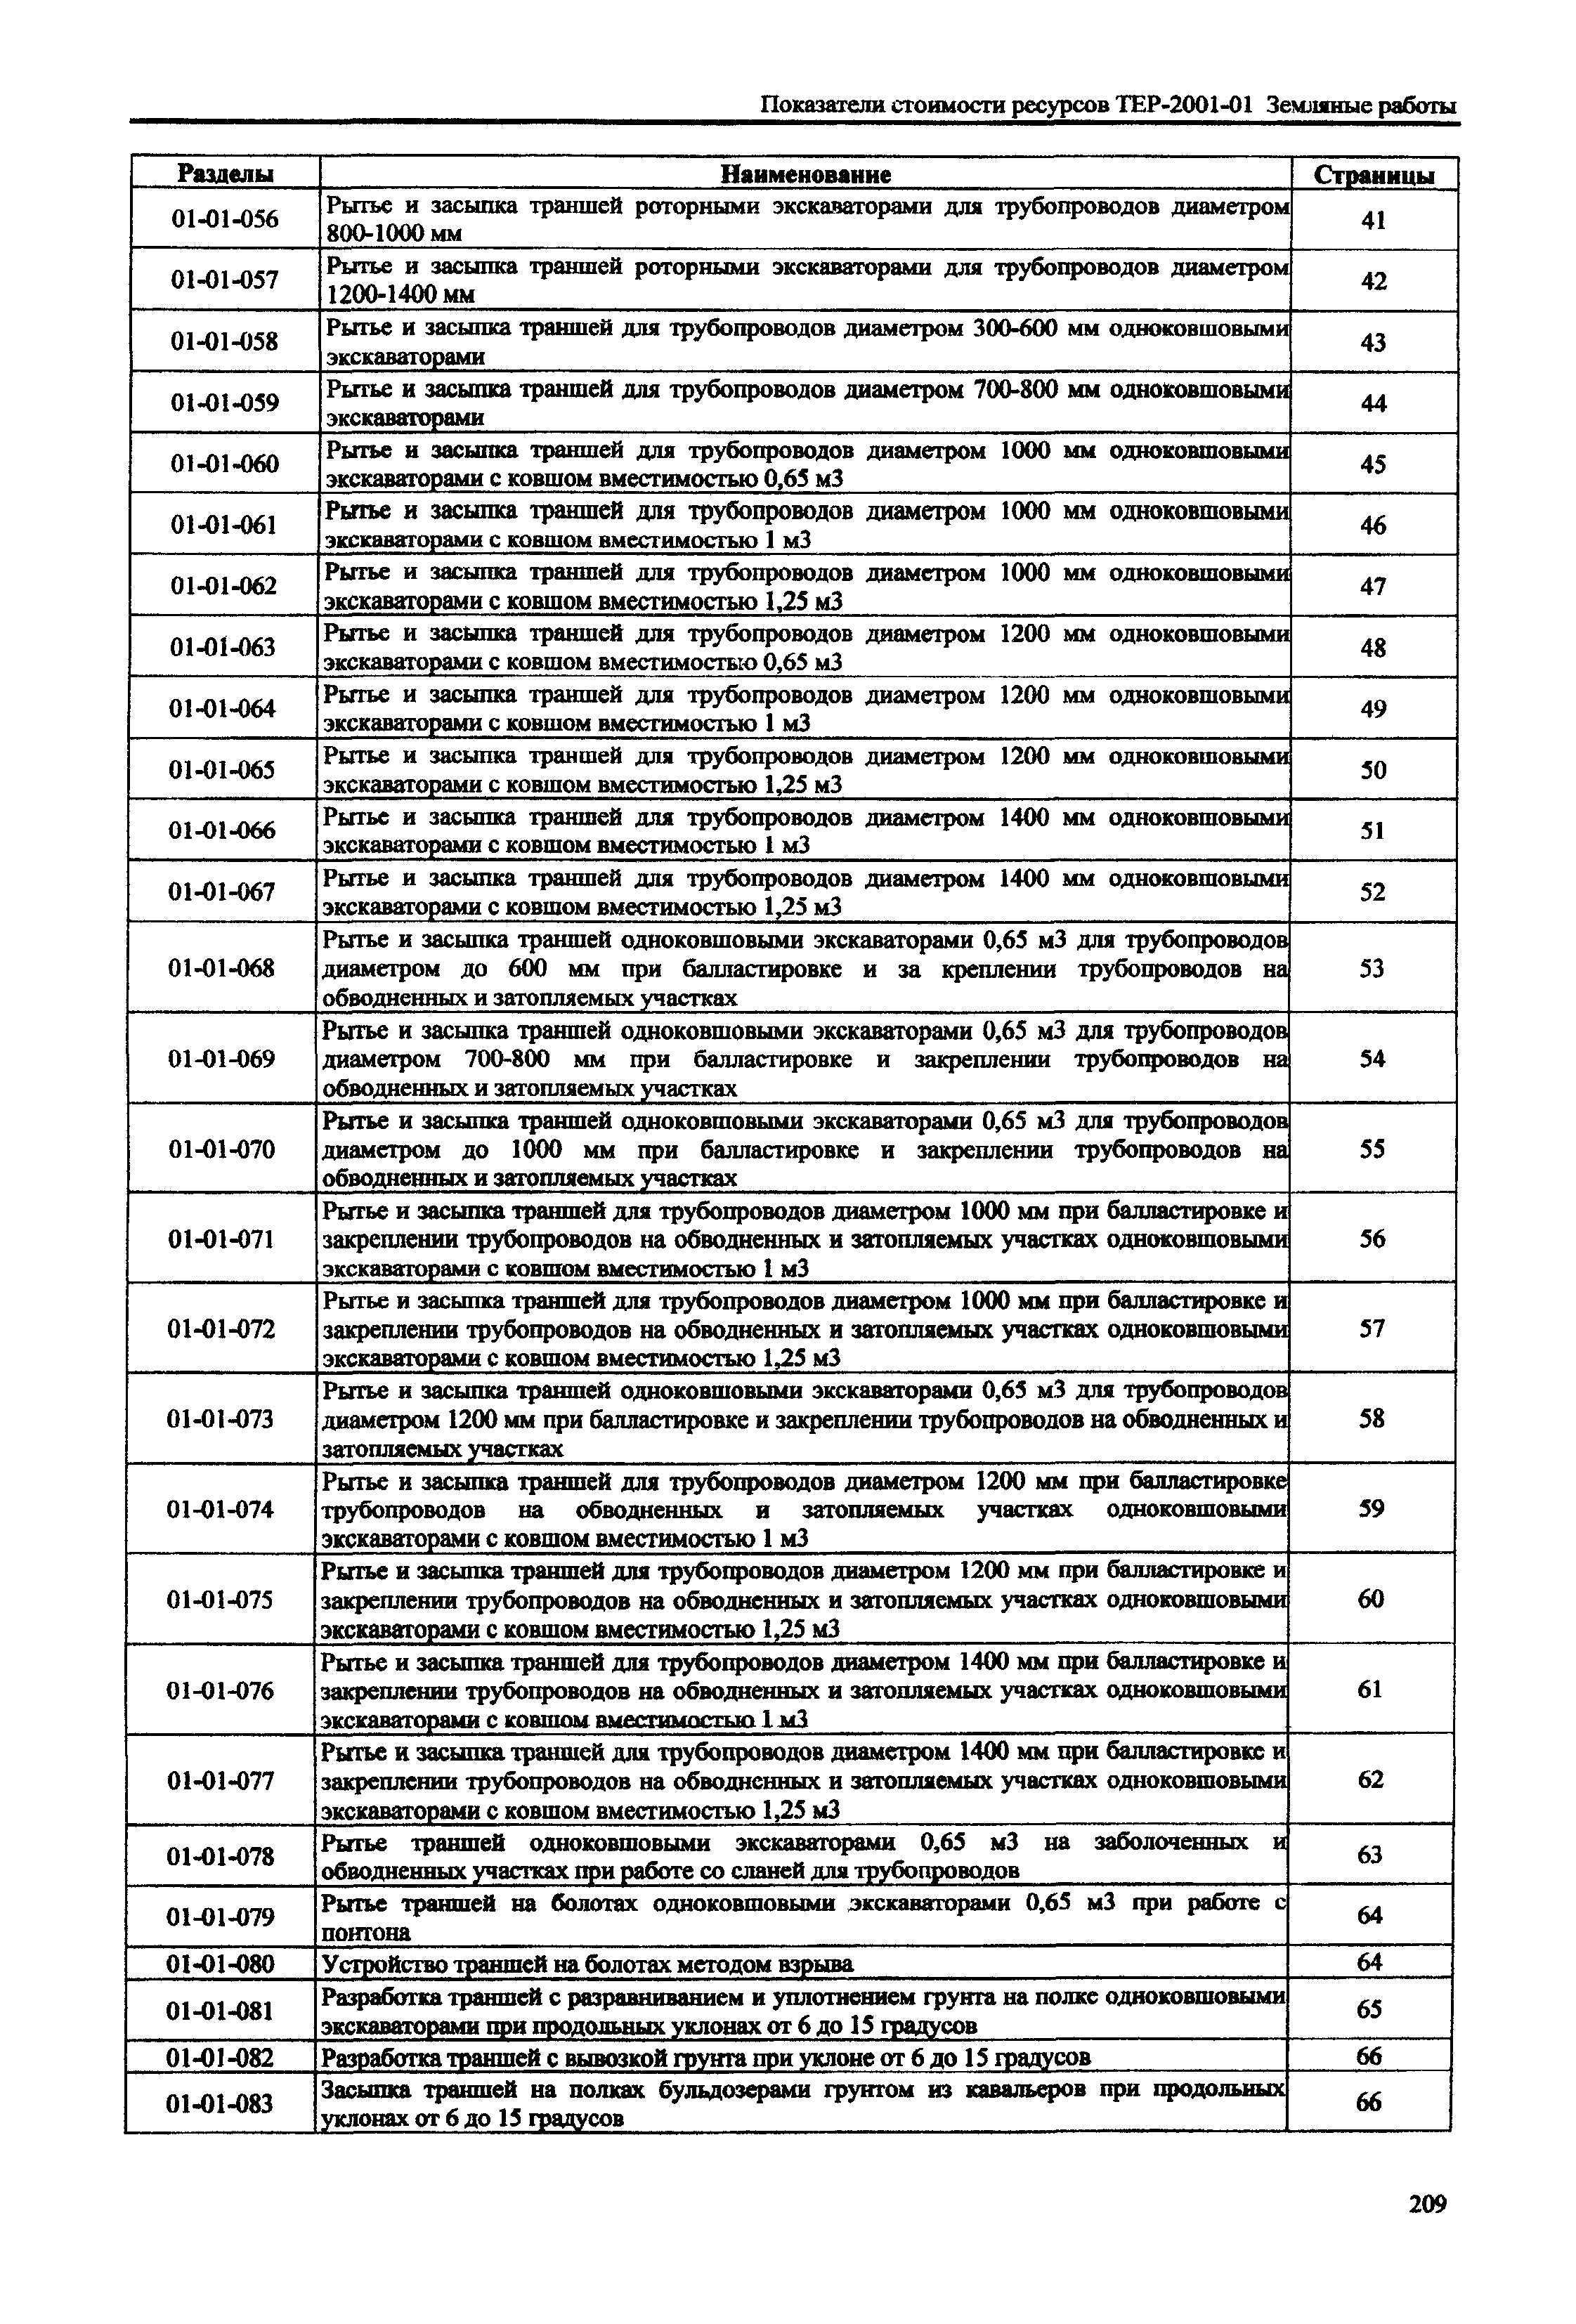 Справочное пособие к ТЕР 81-02-01-2001